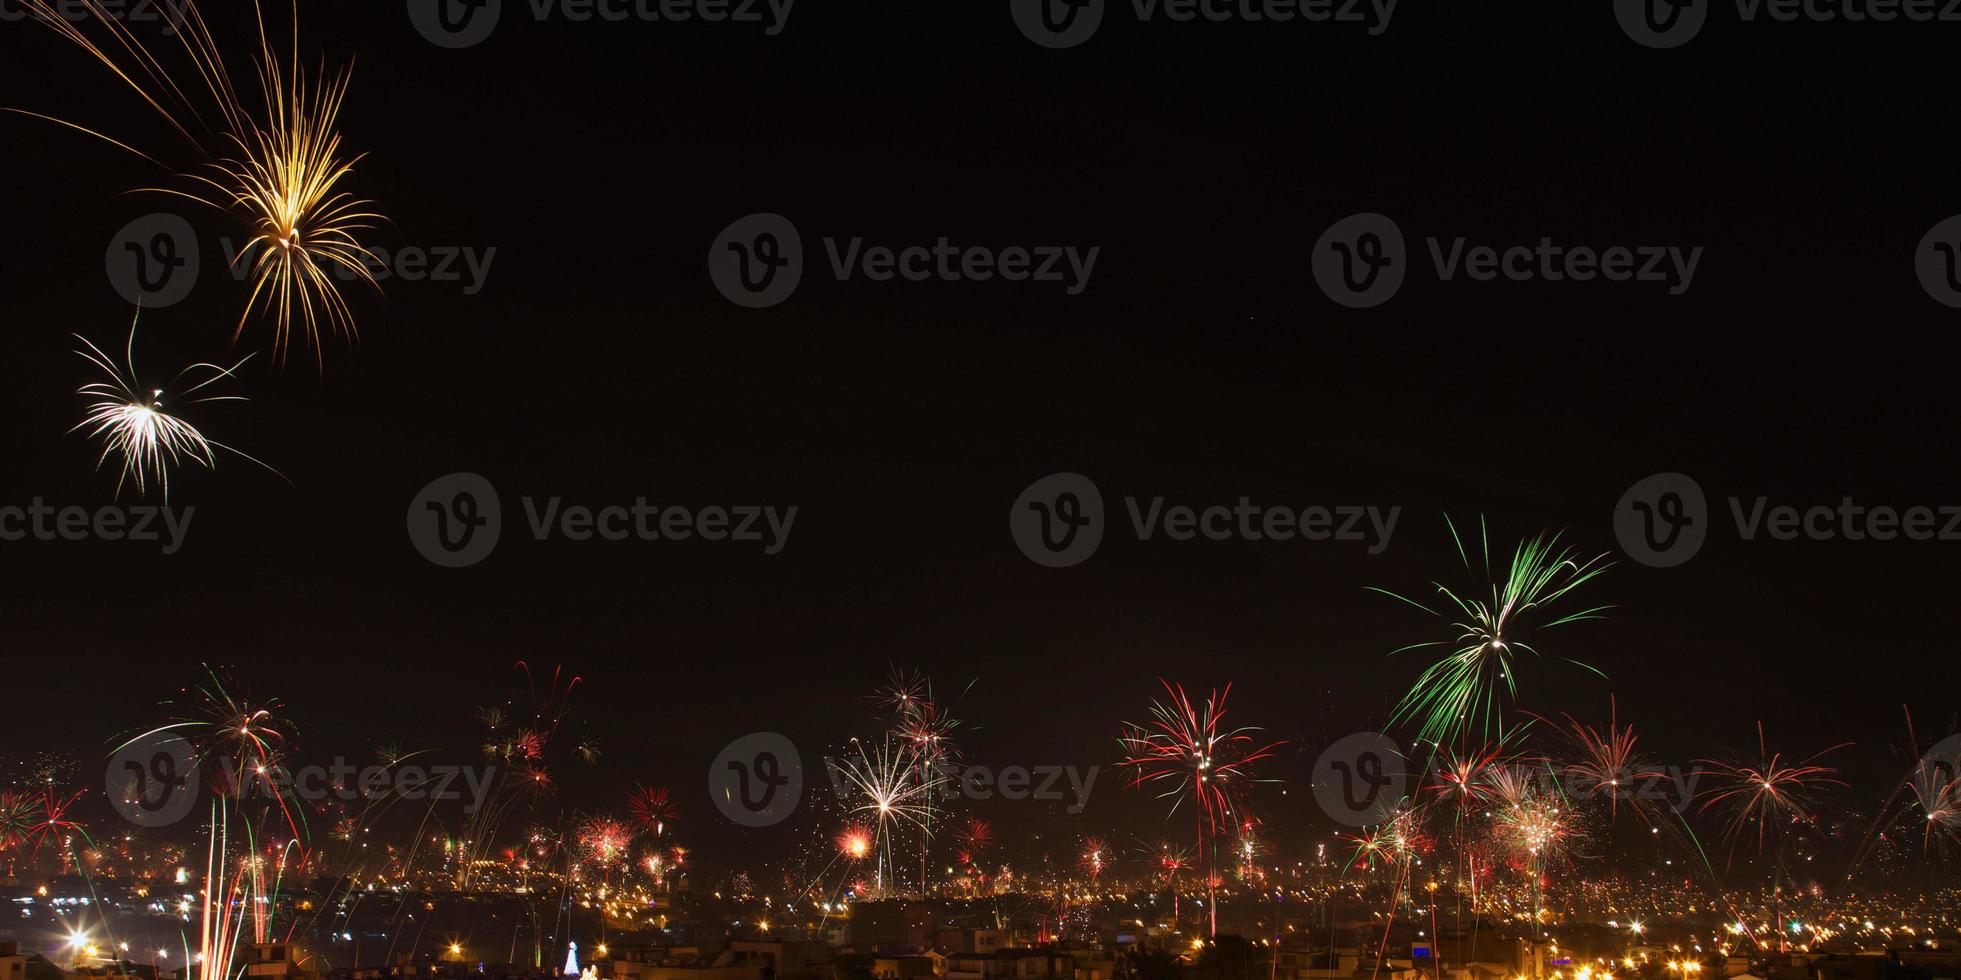 fogos de artifício de véspera de ano novo na cidade de arequipa peru foto